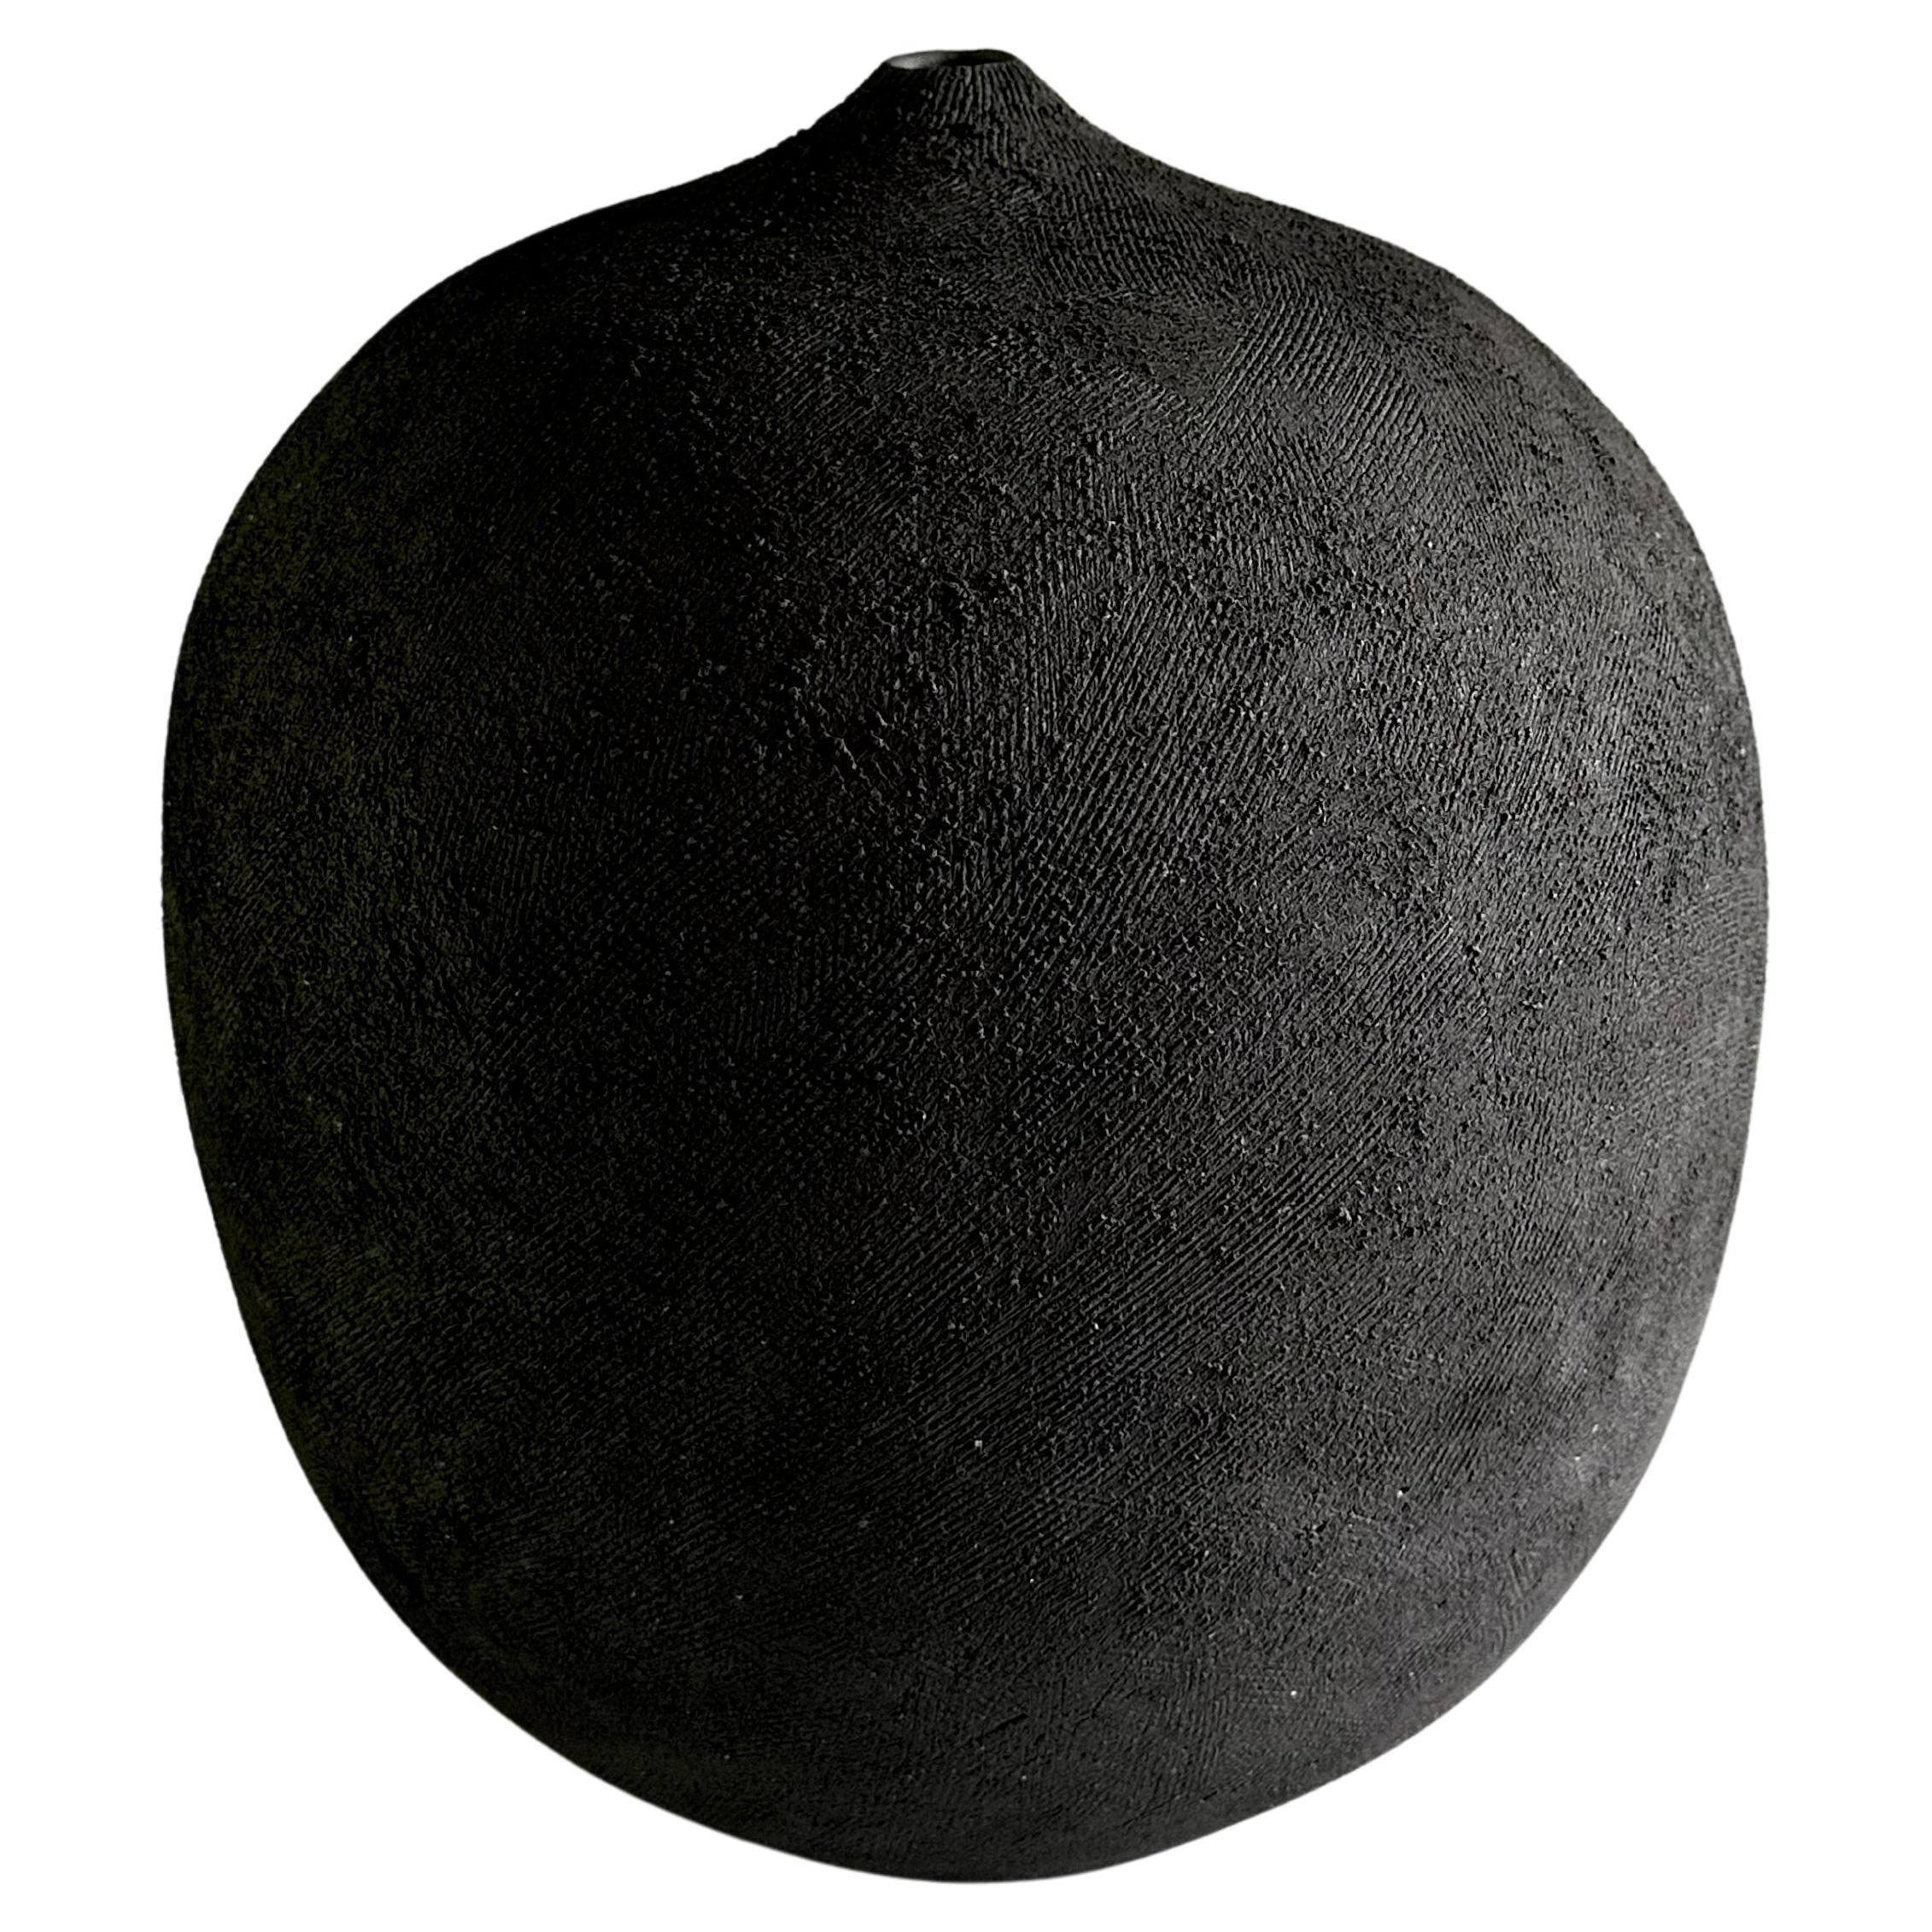 Handgefertigte schwarze dekorative Vase aus strukturiertem Steingut